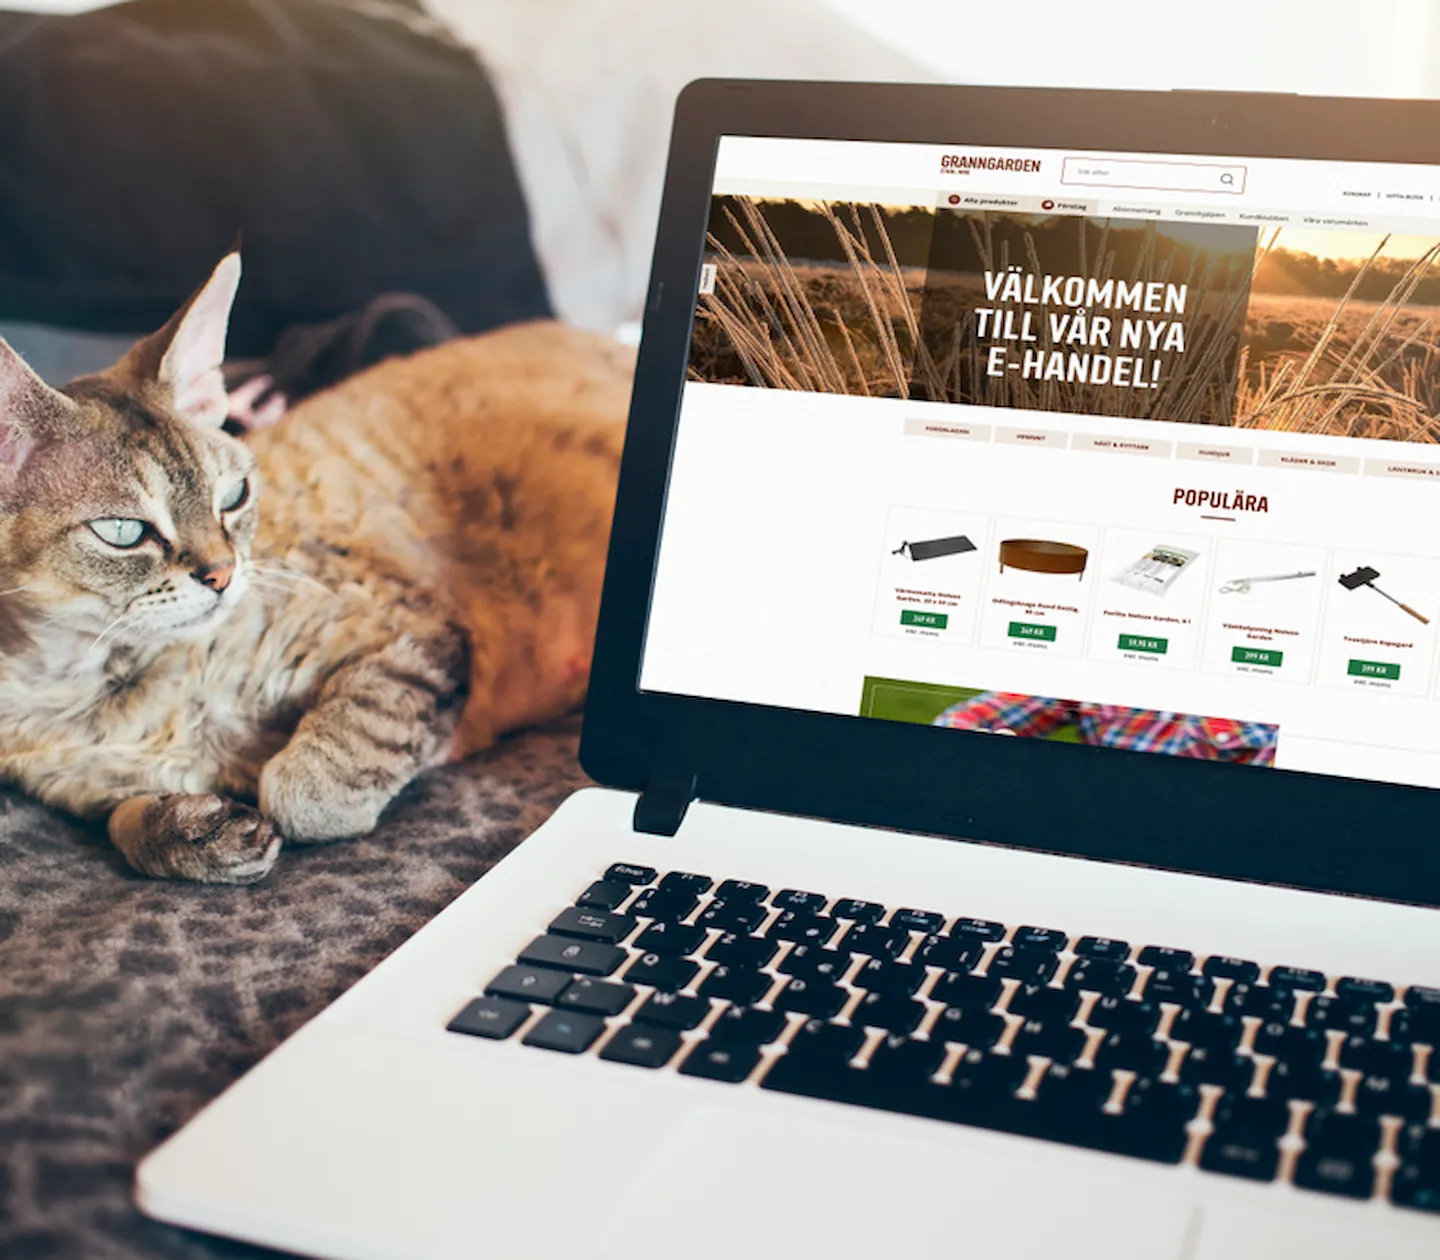 En katt ligger bredvid en dator som visar Granngårdens webbplats